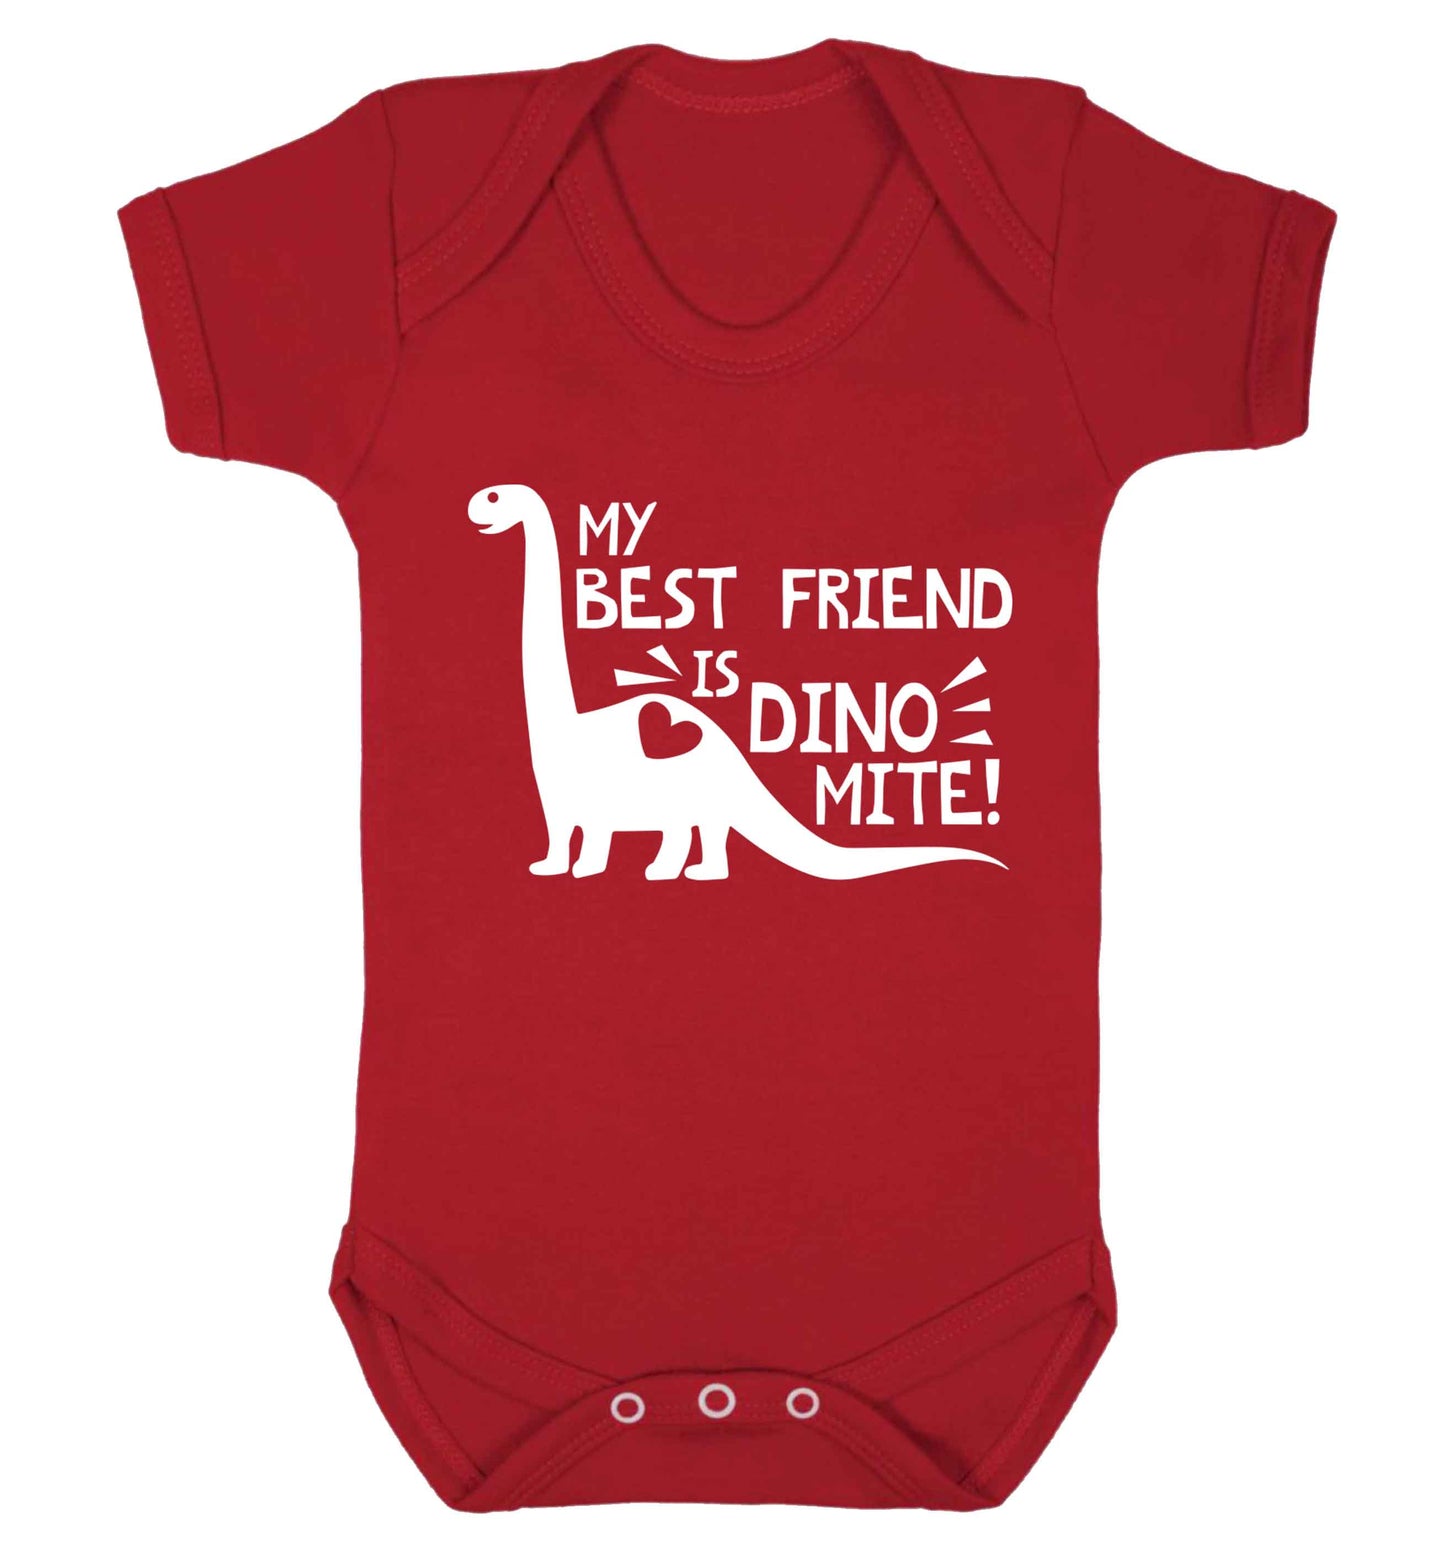 My best friend is dinomite! Baby Vest red 18-24 months